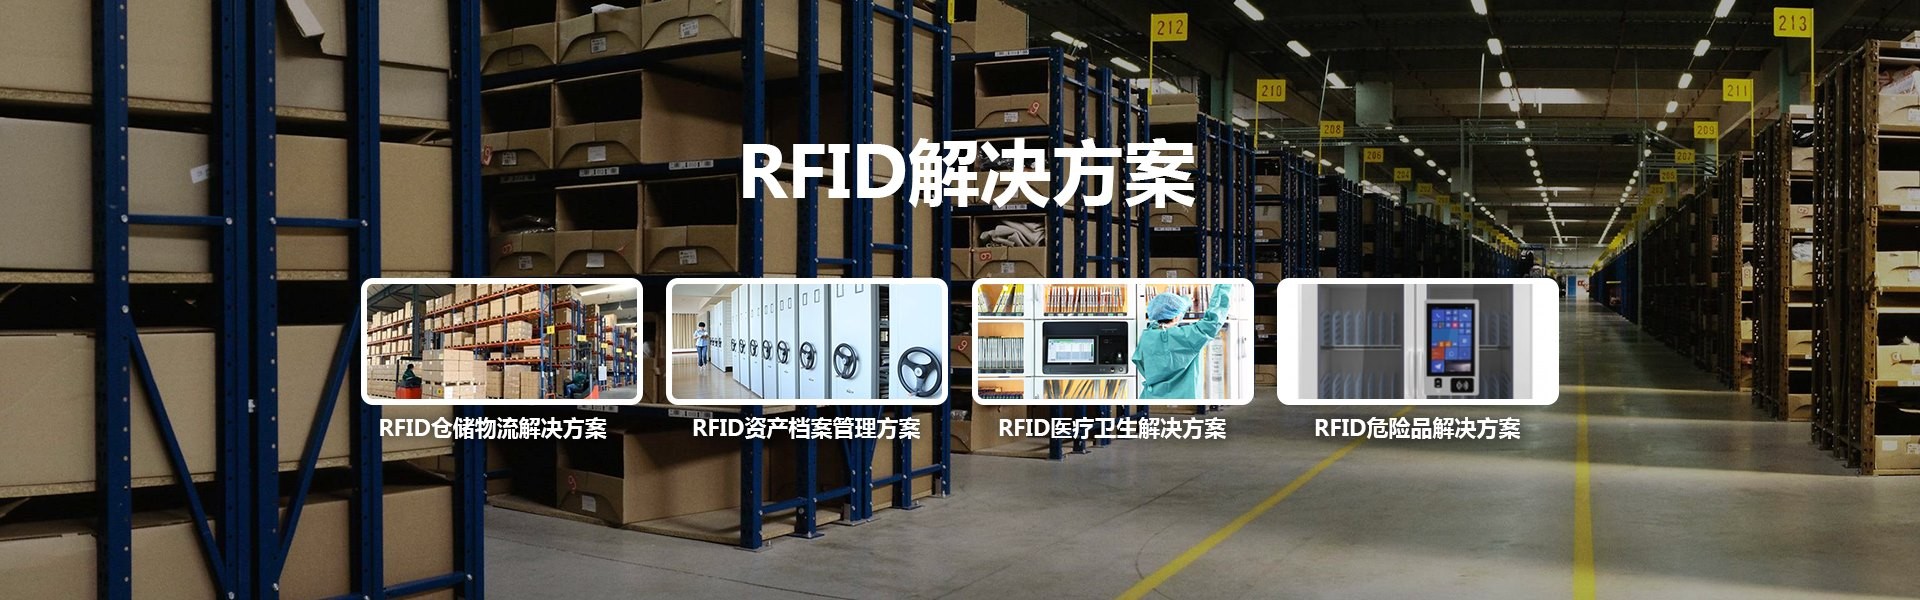 RFID城市物联网解决方案